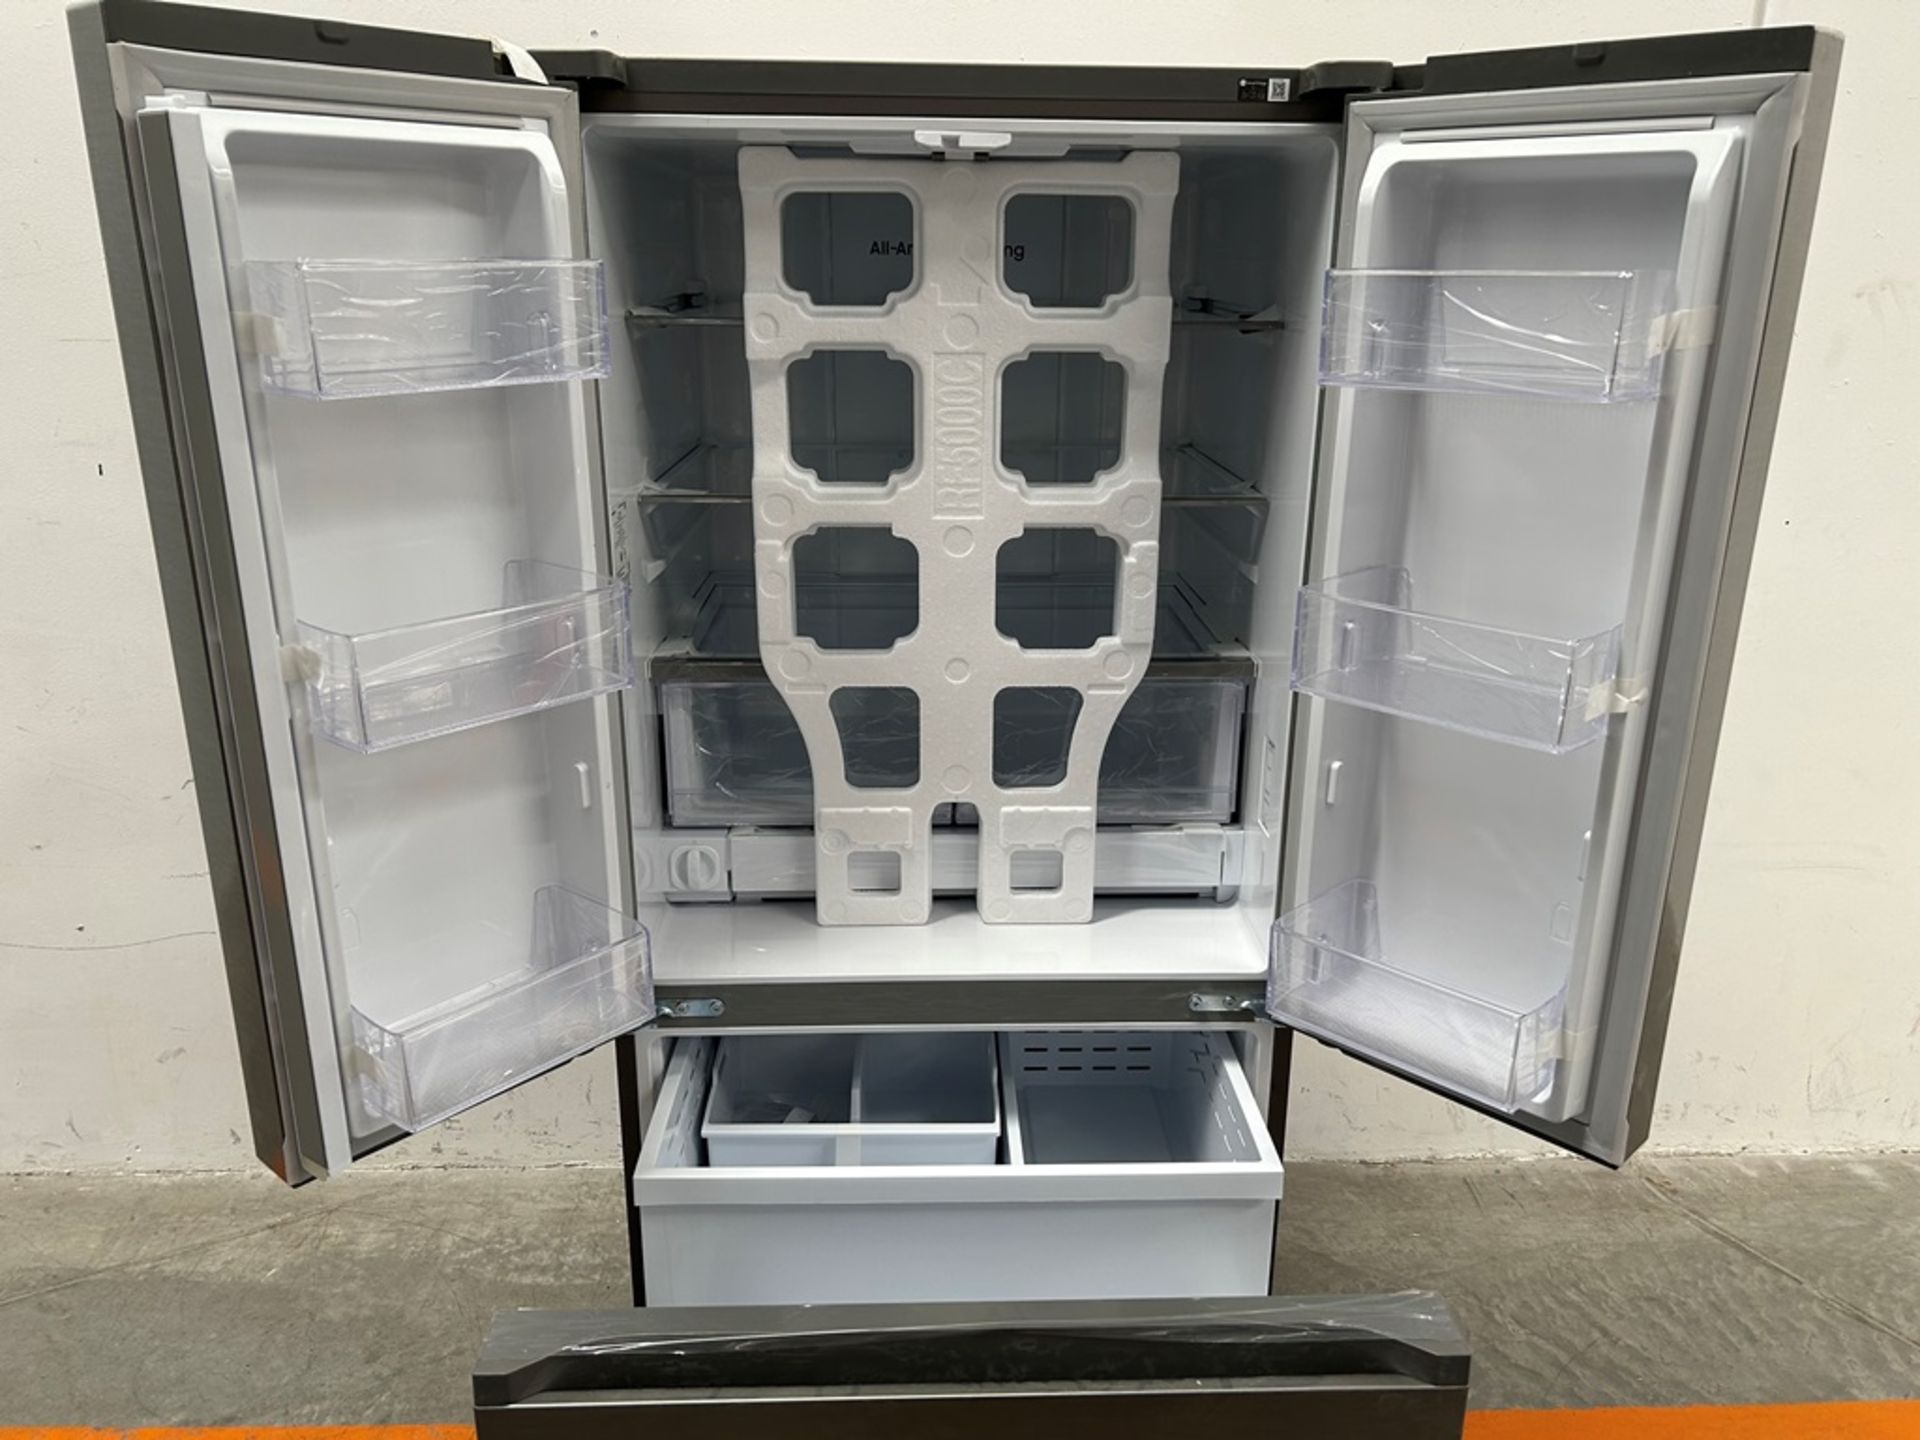 (NUEVO) Refrigerador Marca SAMSUNG, Modelo RF25C5151S9, Serie 100036K, Color GRIS - Image 4 of 7